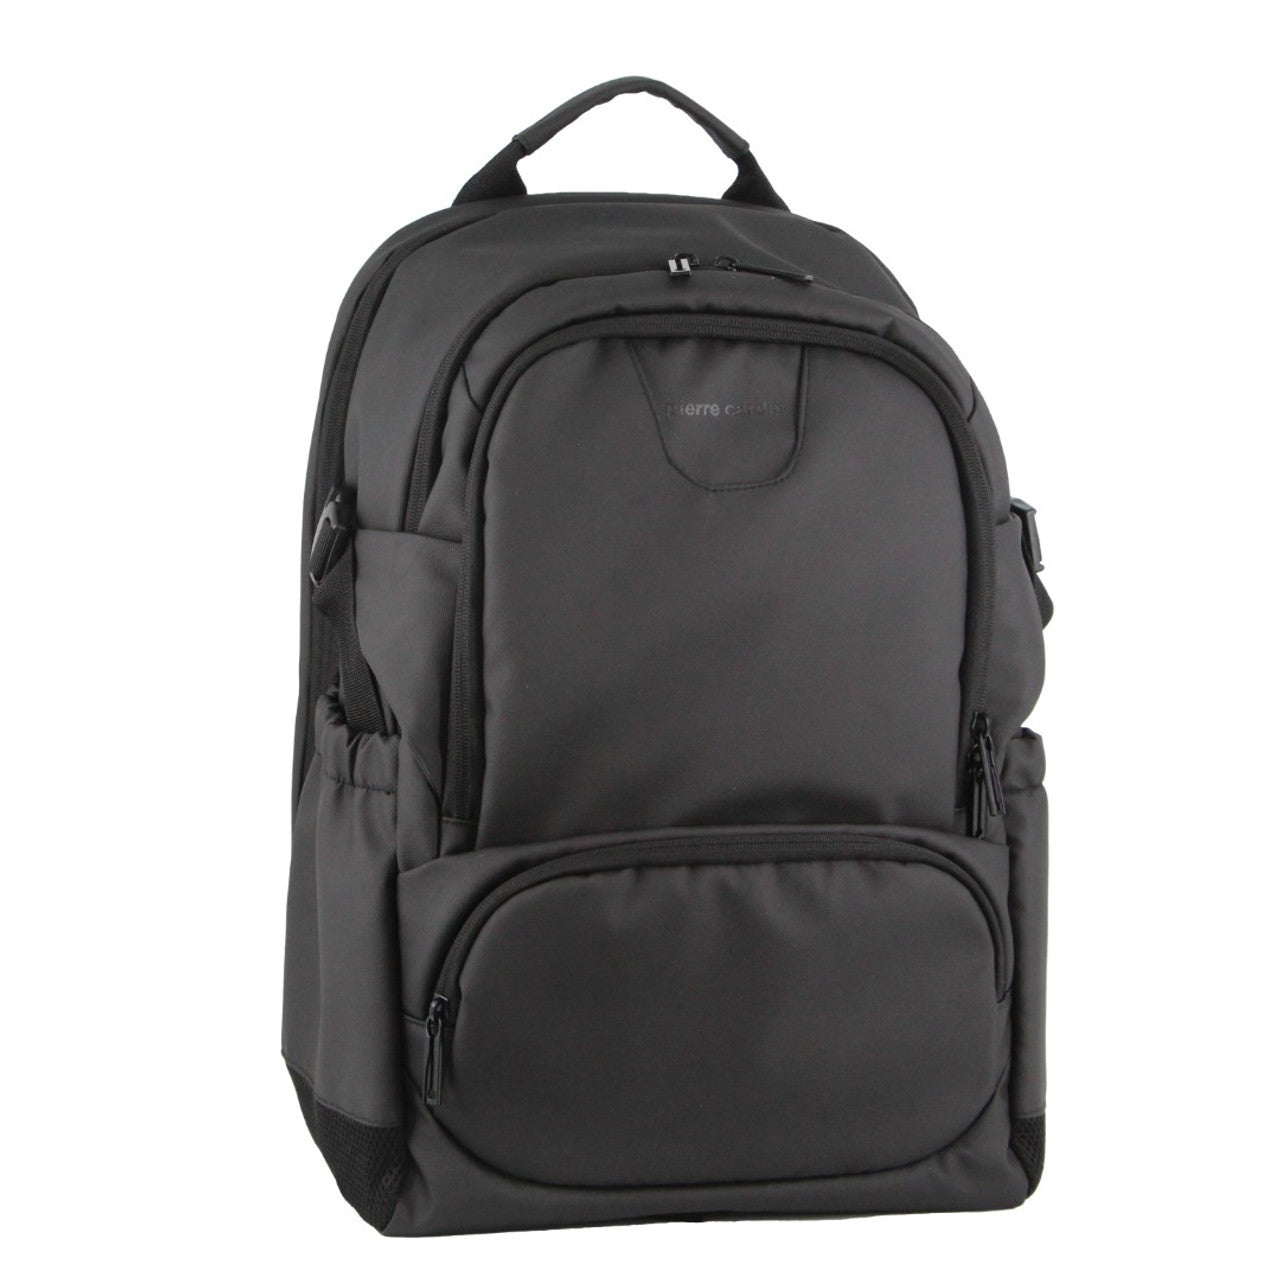 Pierre Cardin - PC3622 15in Laptop backpack w USB port - Black